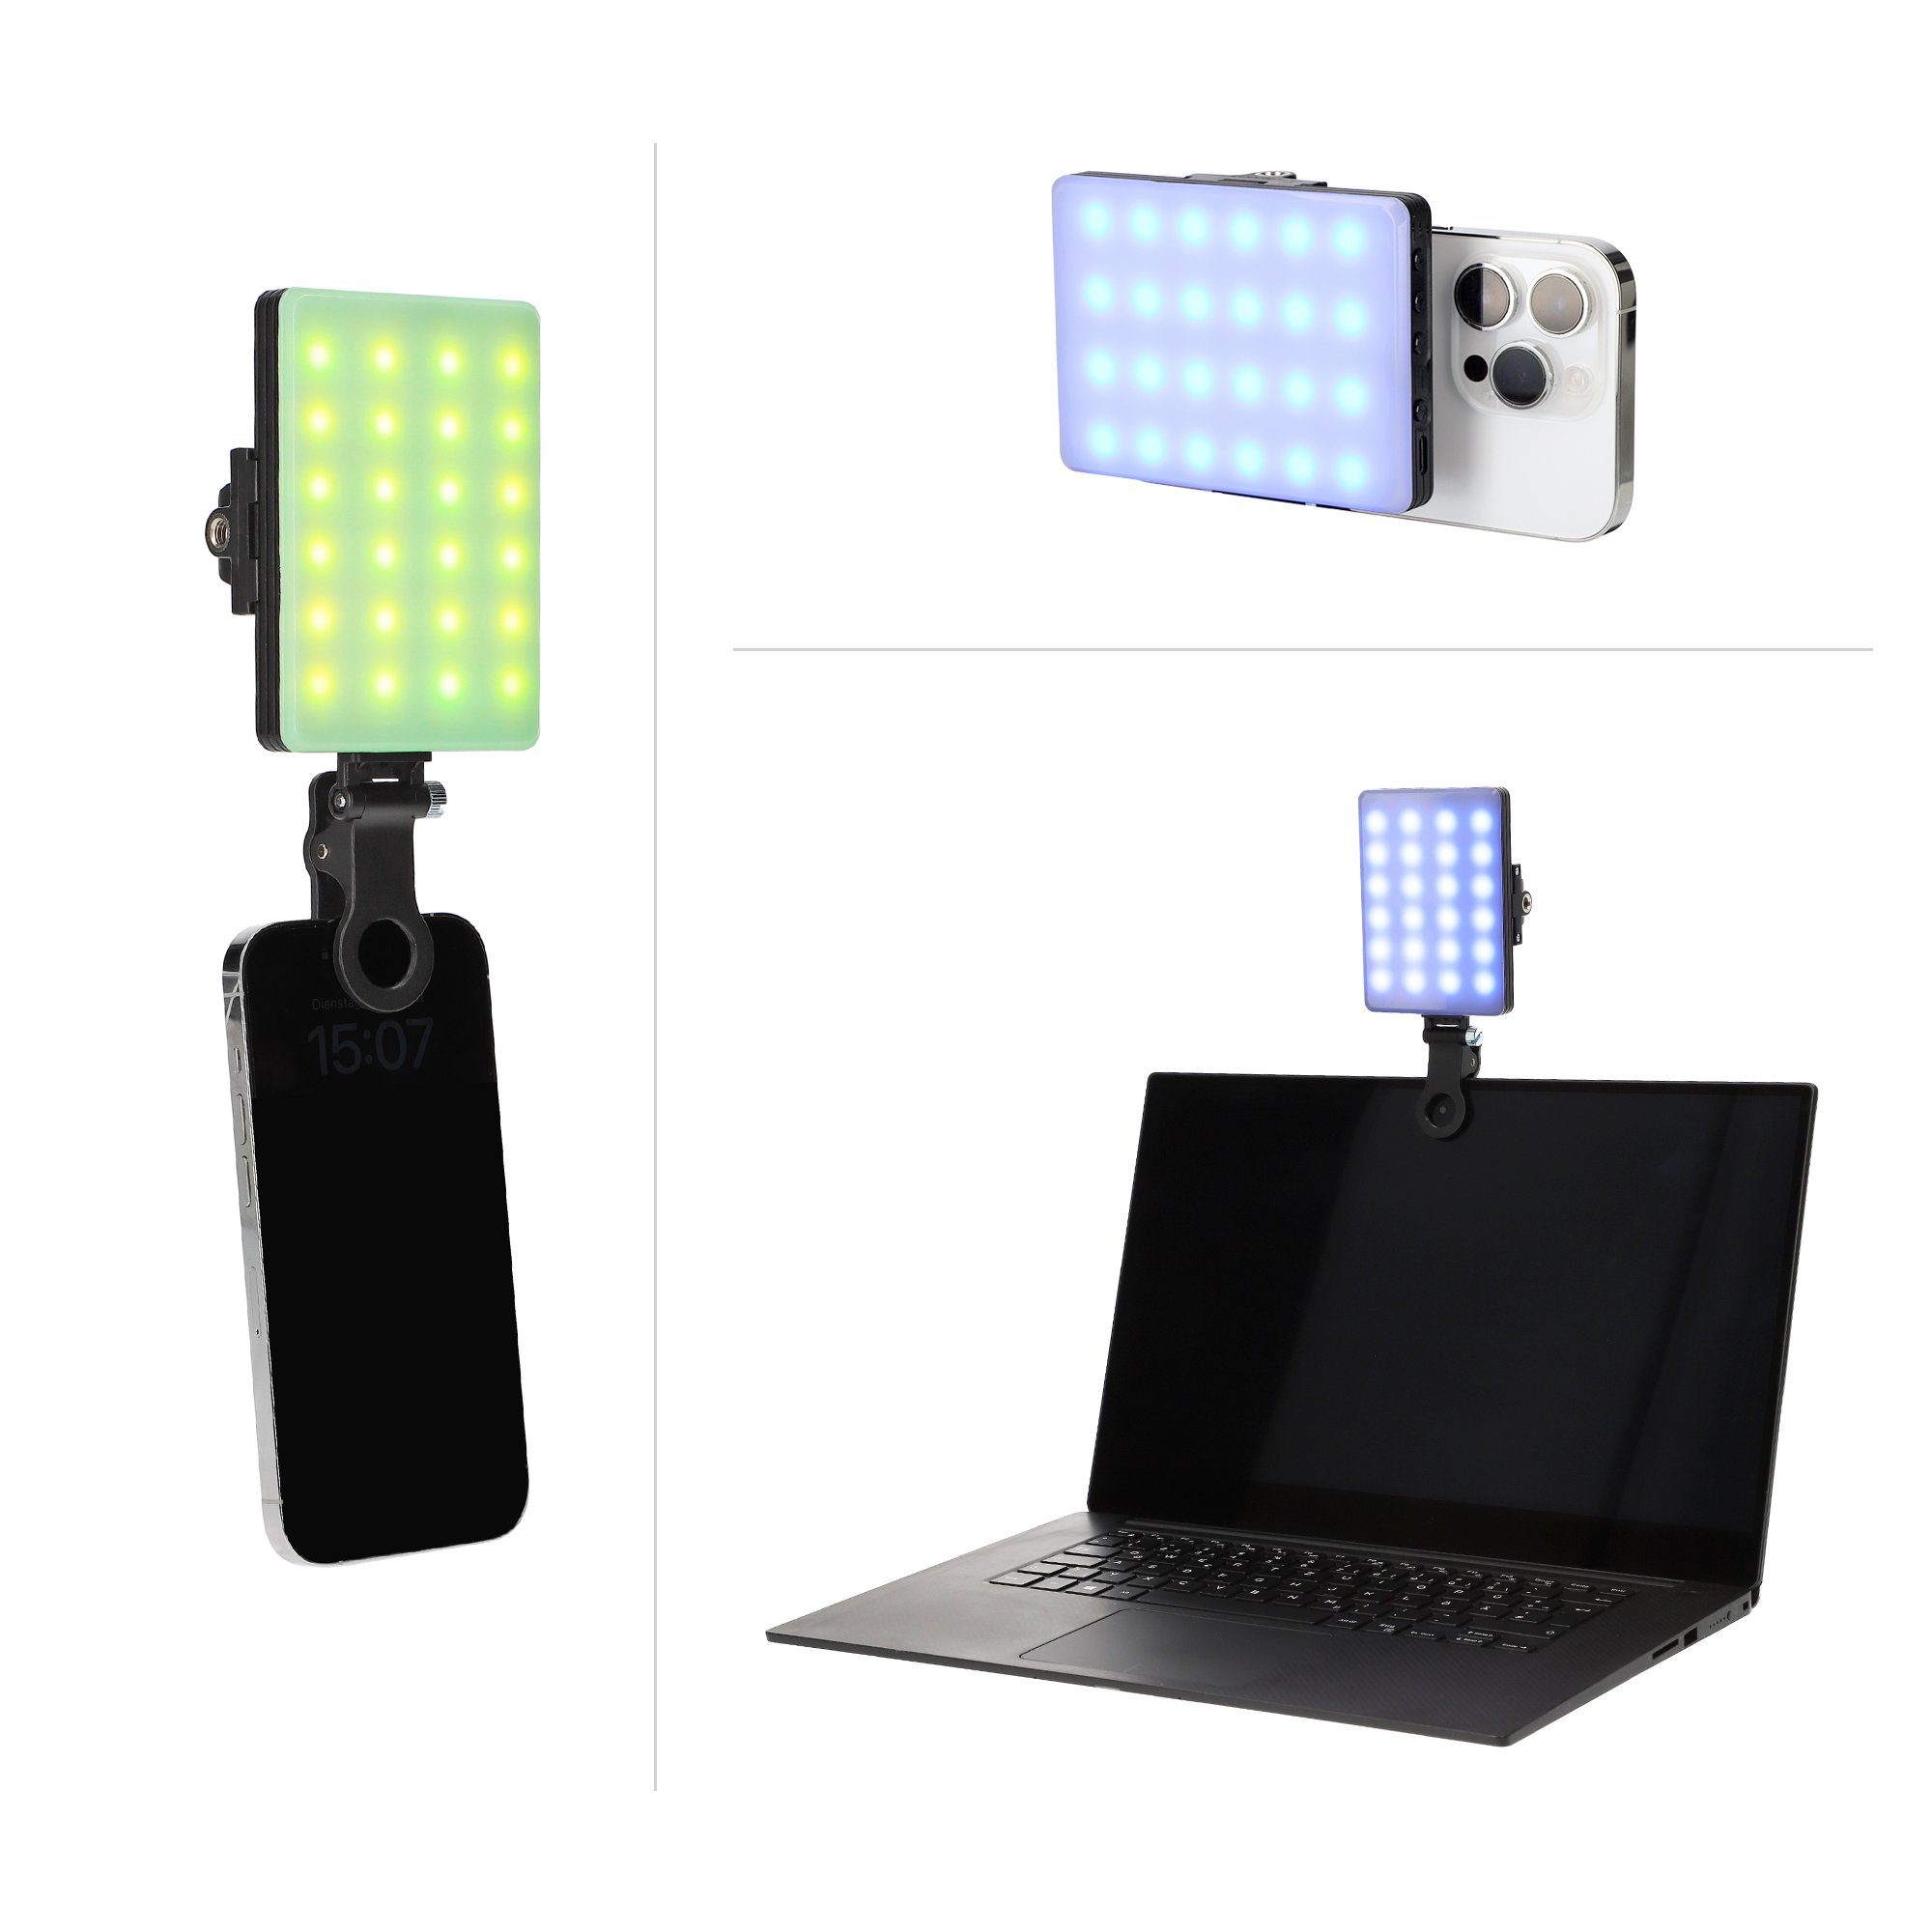 LED Ladbar durch Leuchte Ambiente ayex Bilderleuchte LED Perfekte Type-C RGB Ausleuchtung